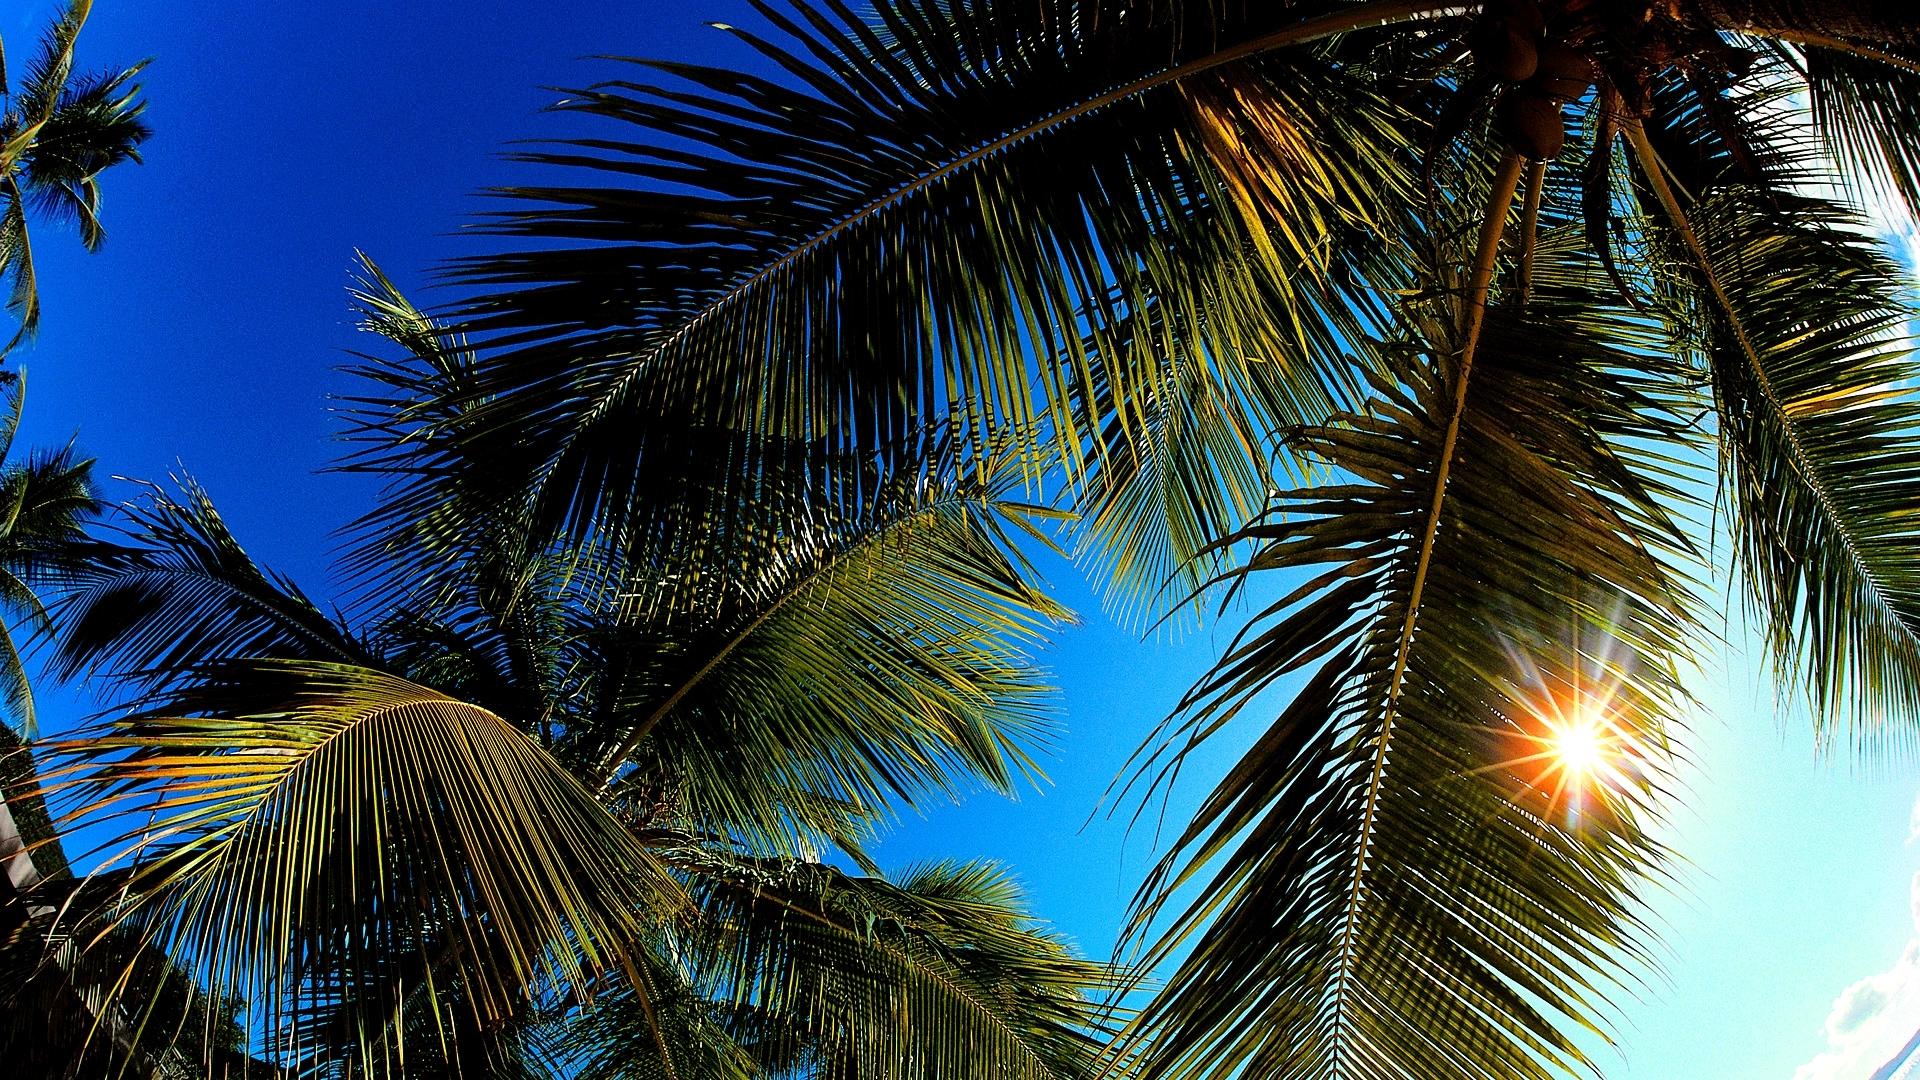 Les palmiers – Cap' vert